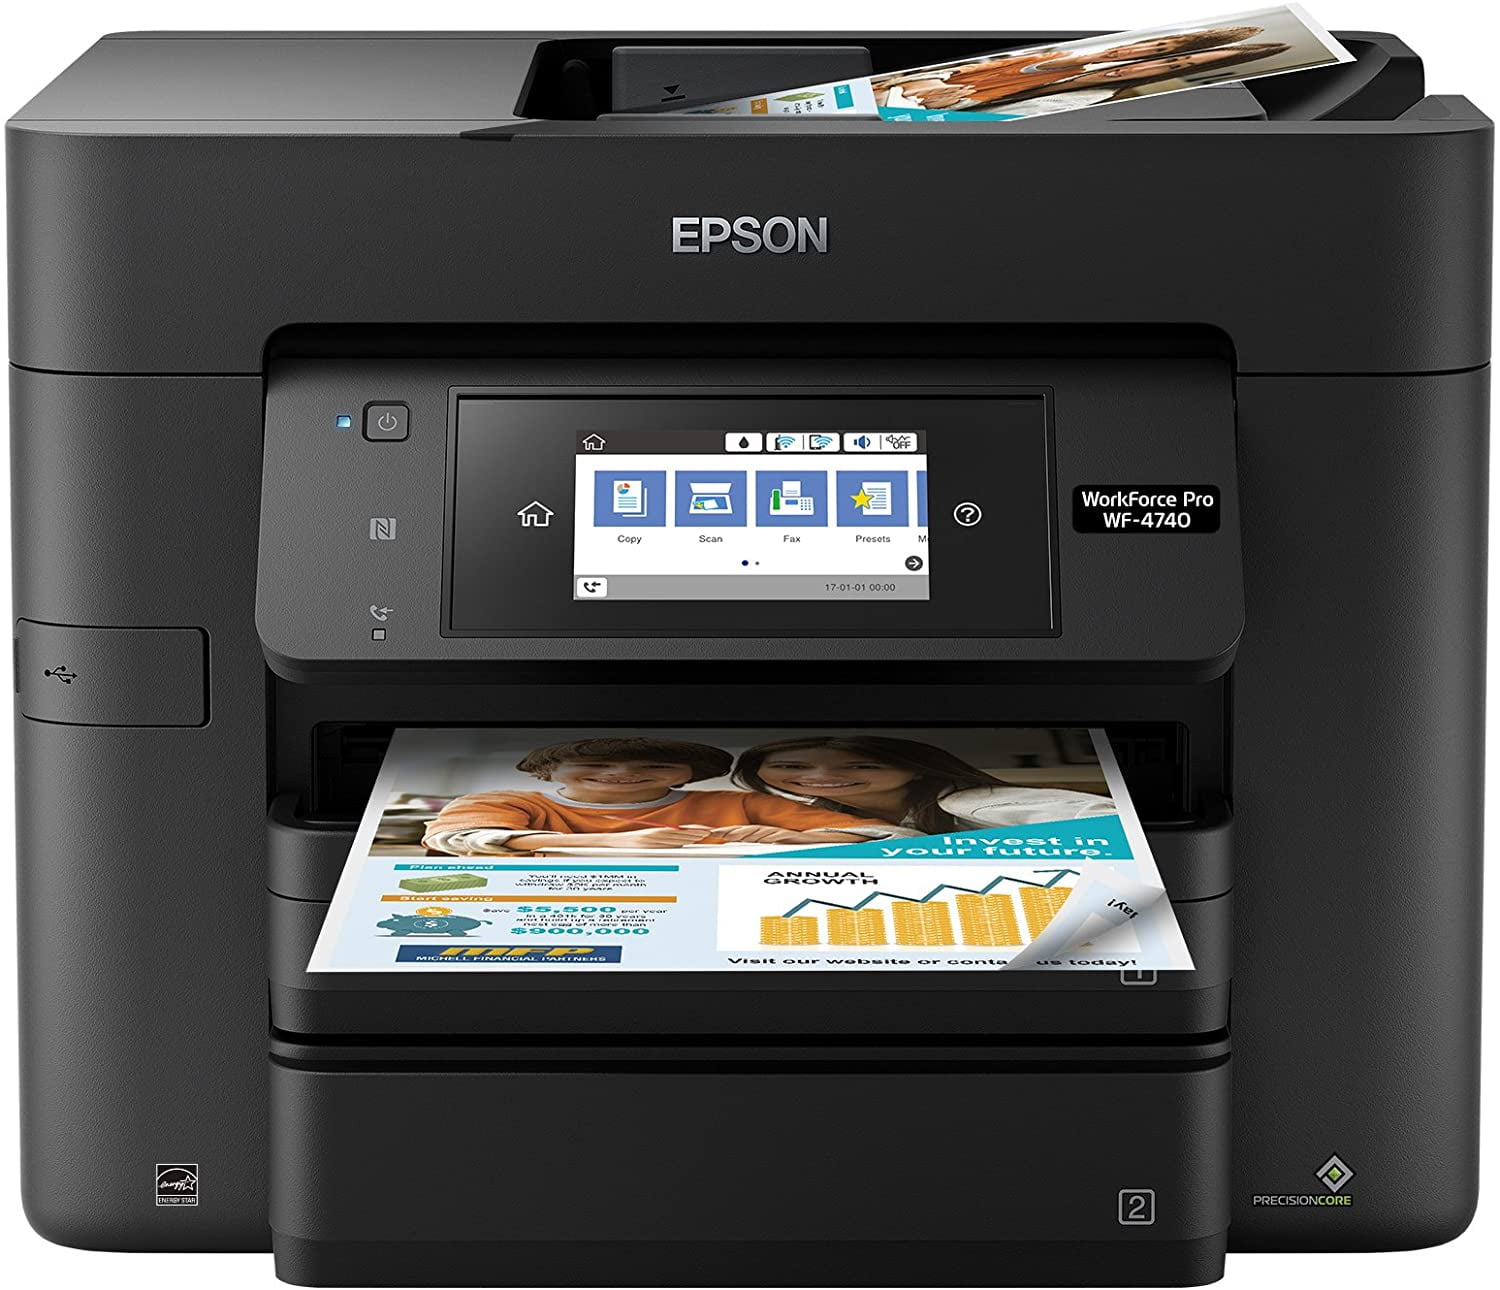 Best inkjet printer scanner